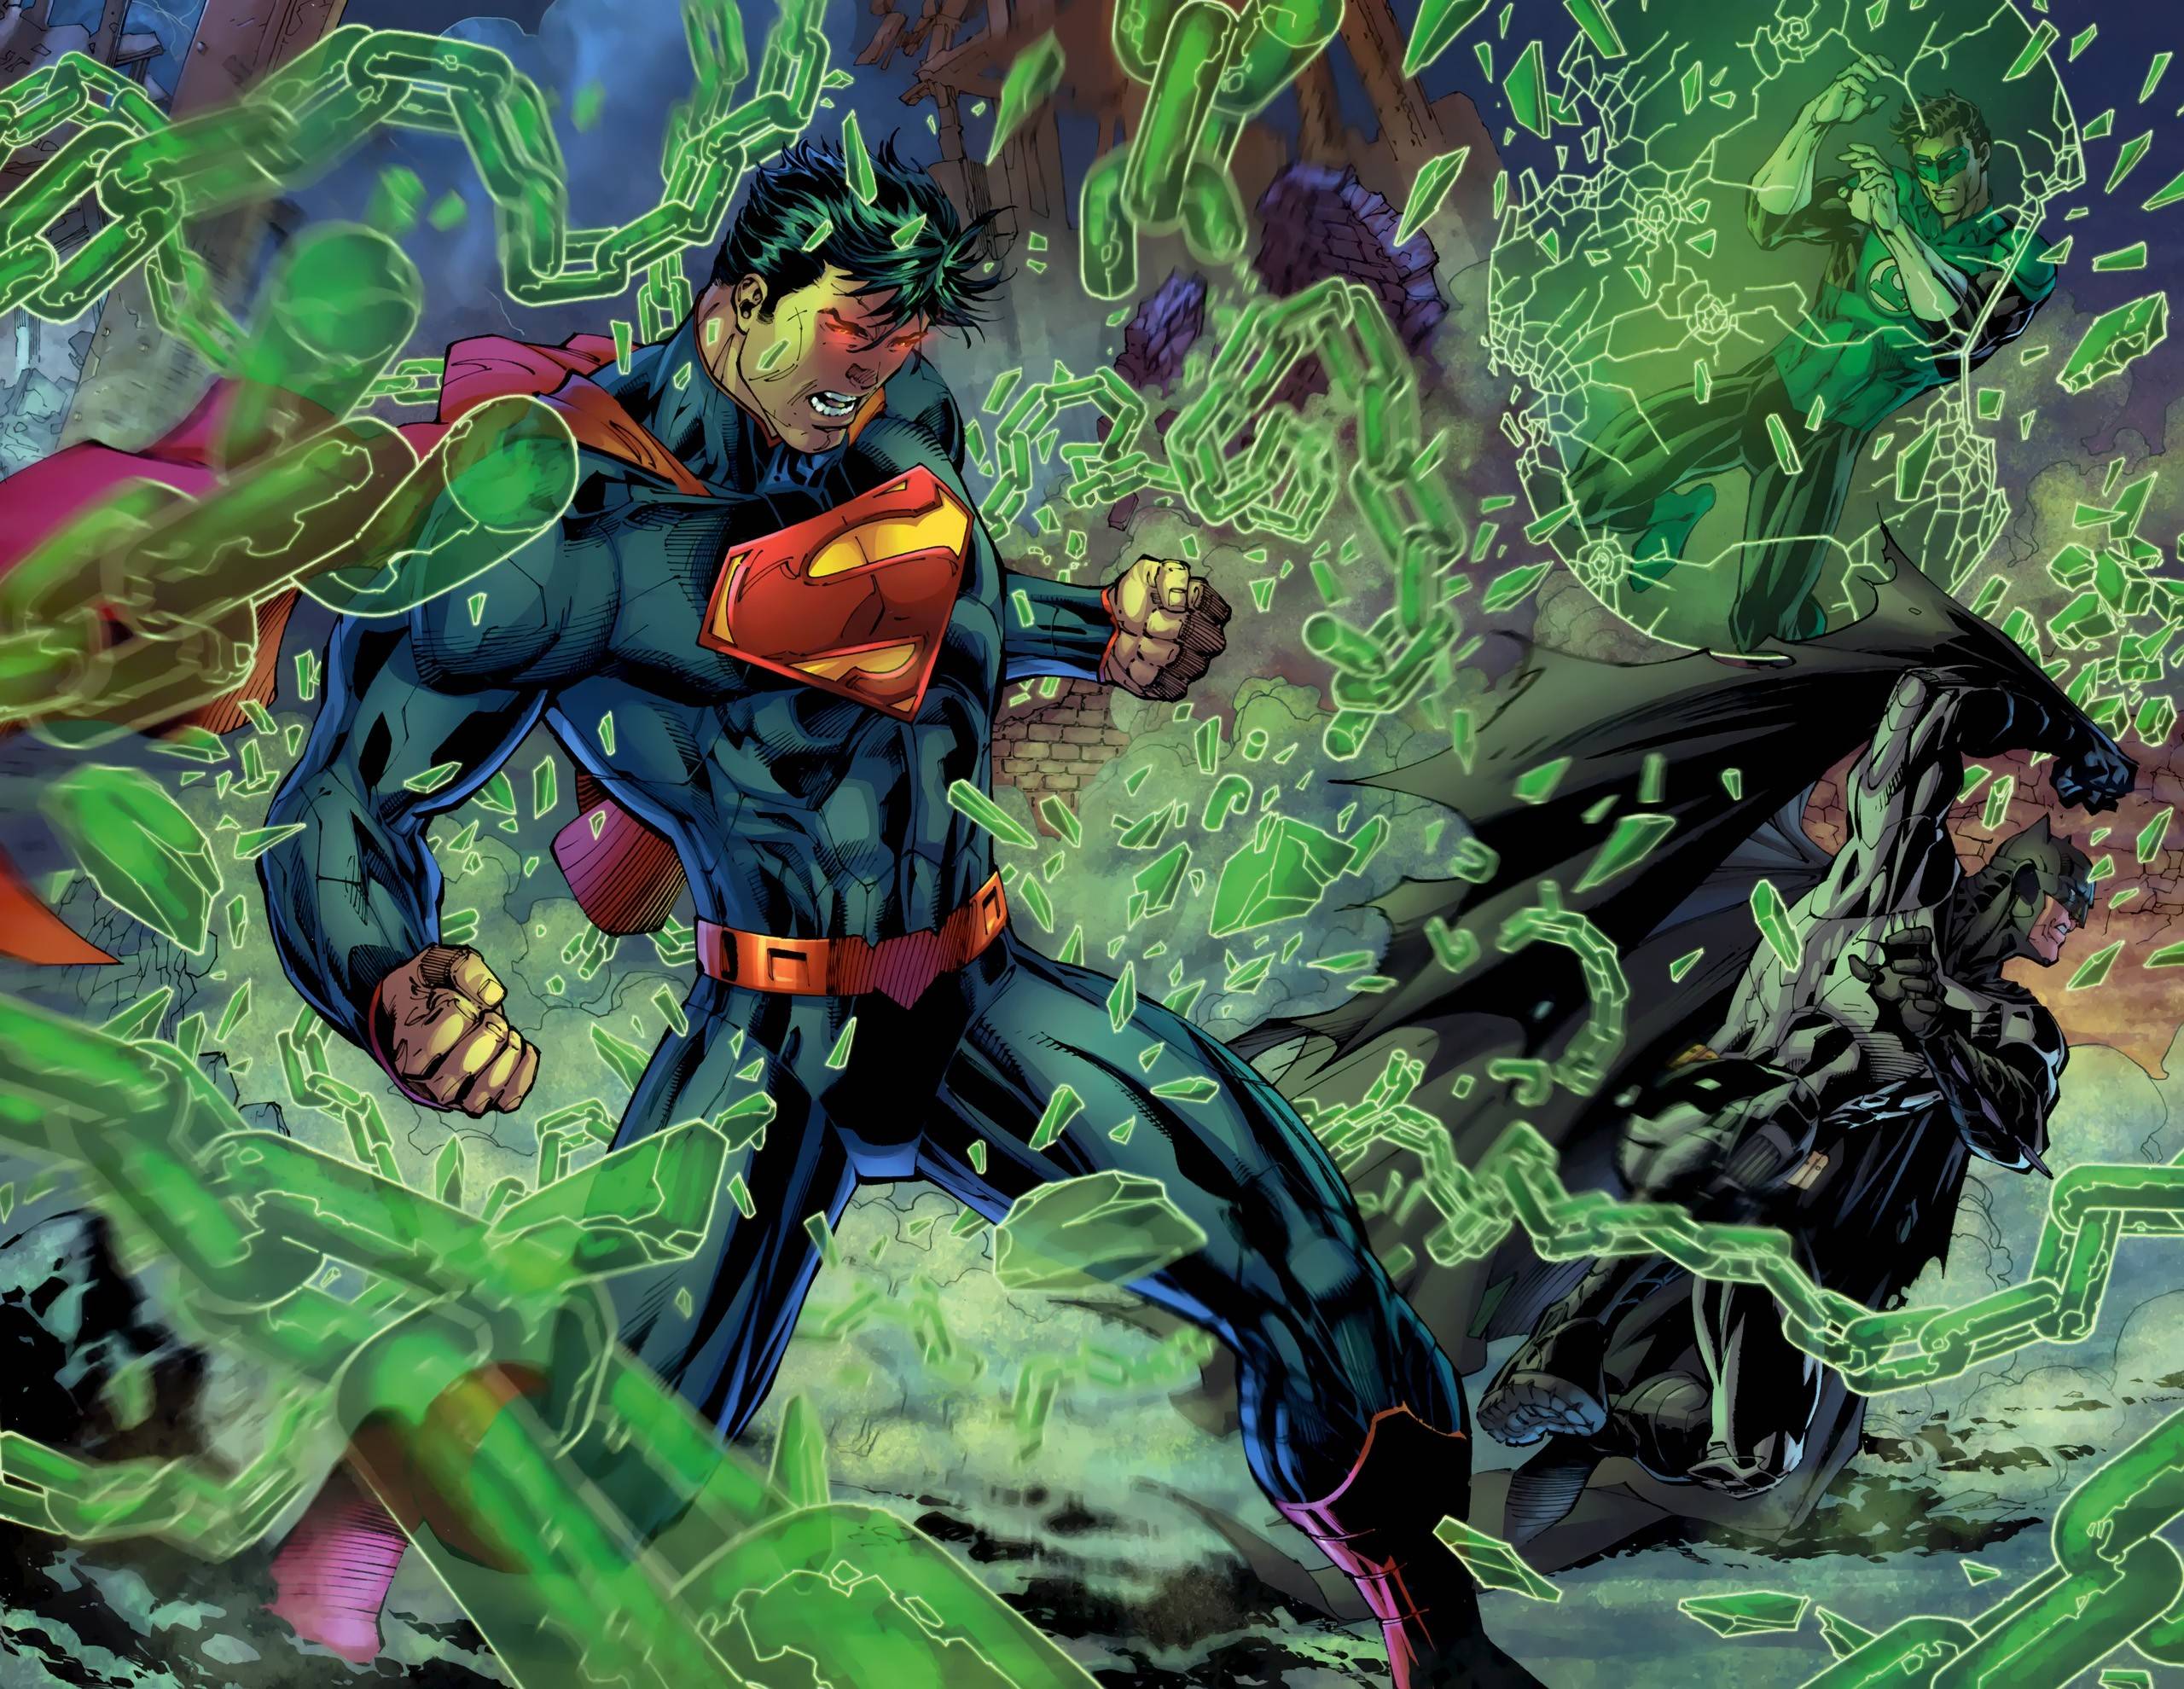 Comics Justice League Of America Wallpaper